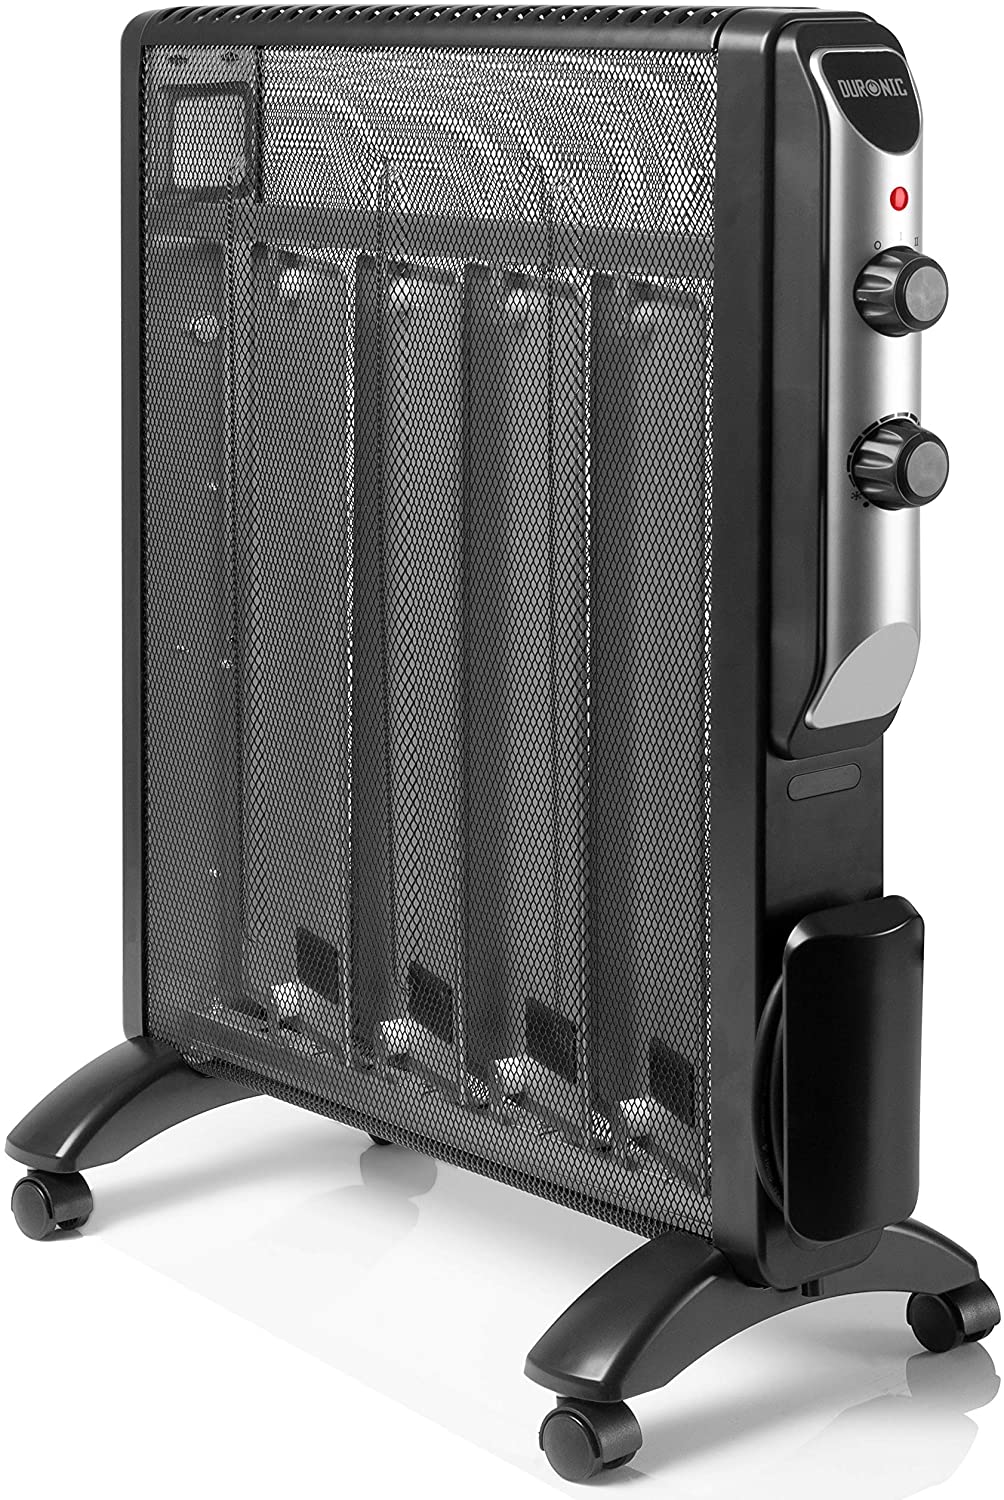 Duronic HV102 Stufa elettrica portatile 2500 W – Panelli radianti mica con  termostato e display digitale – Radiatore senza olio con telecomando - Ris—  duronic-it